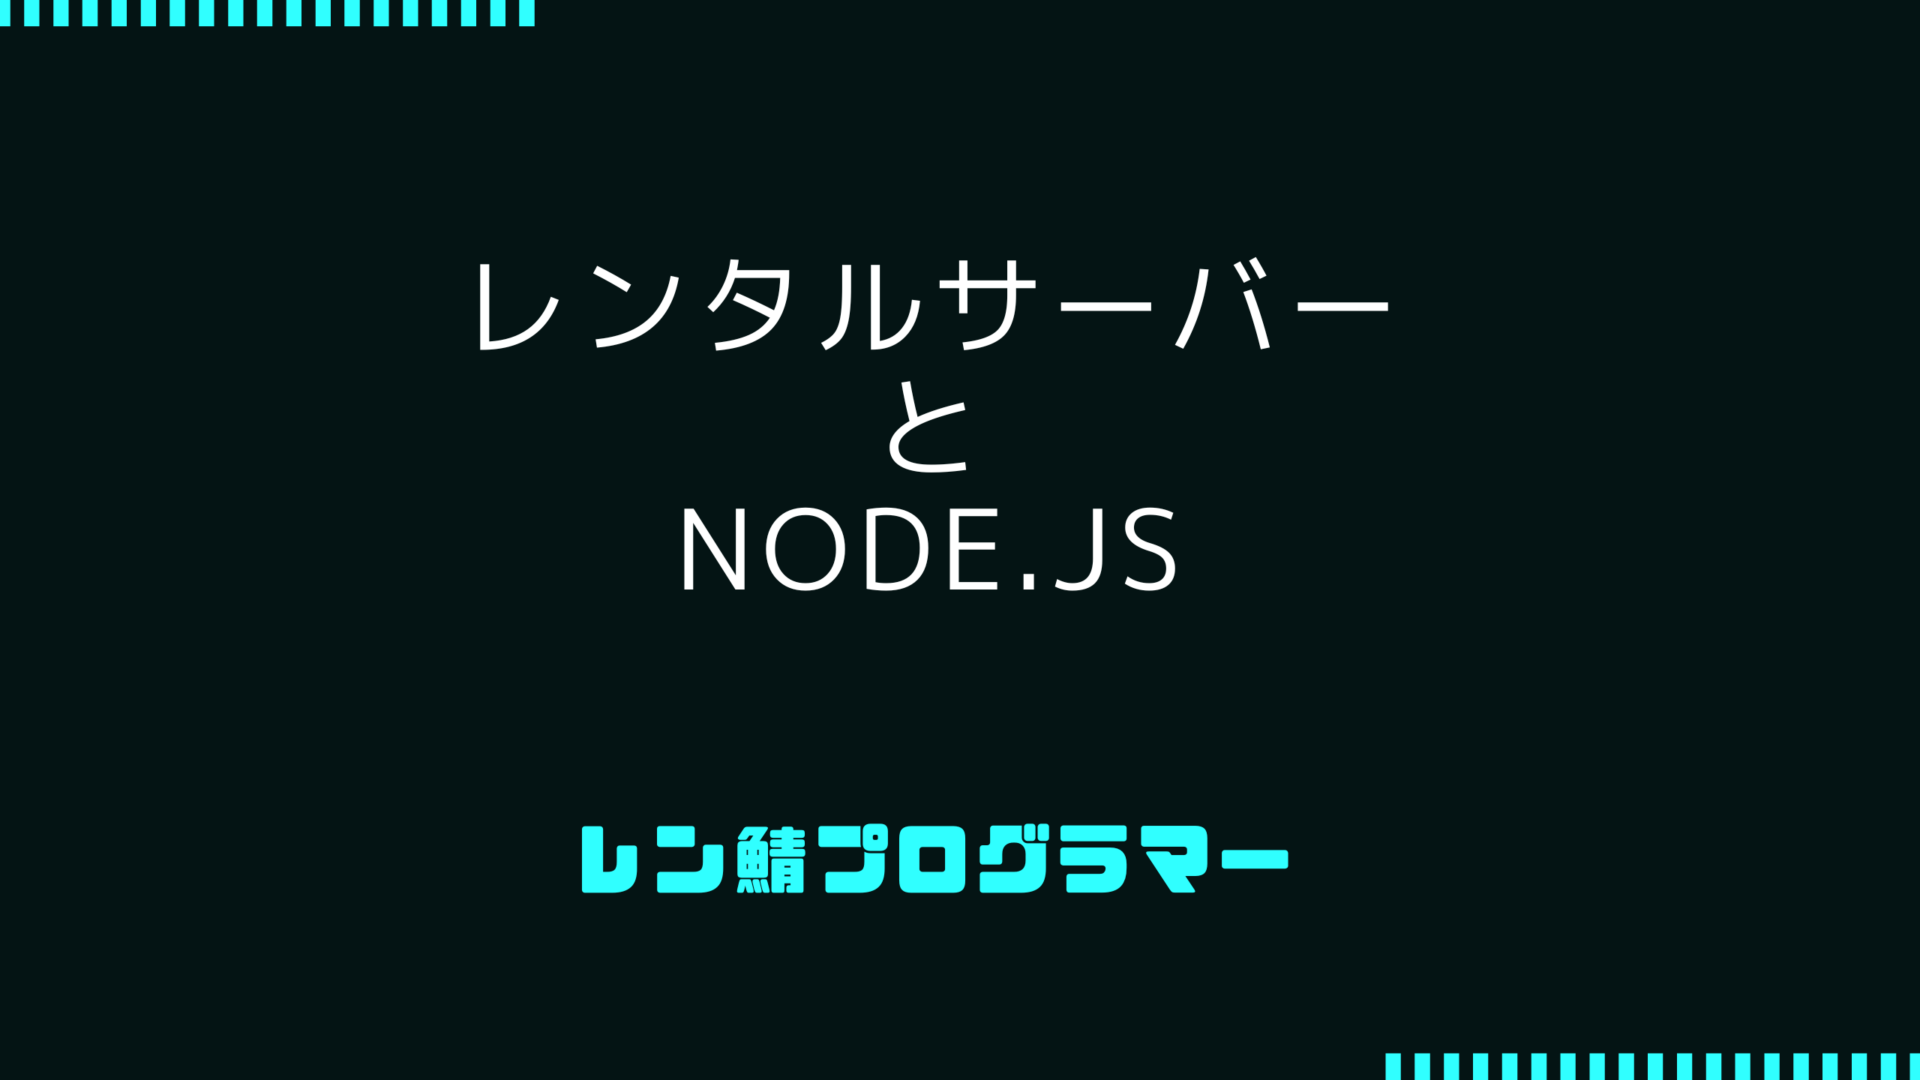 node.jsをレンタルサーバーで使えるの? 使い方では可能です